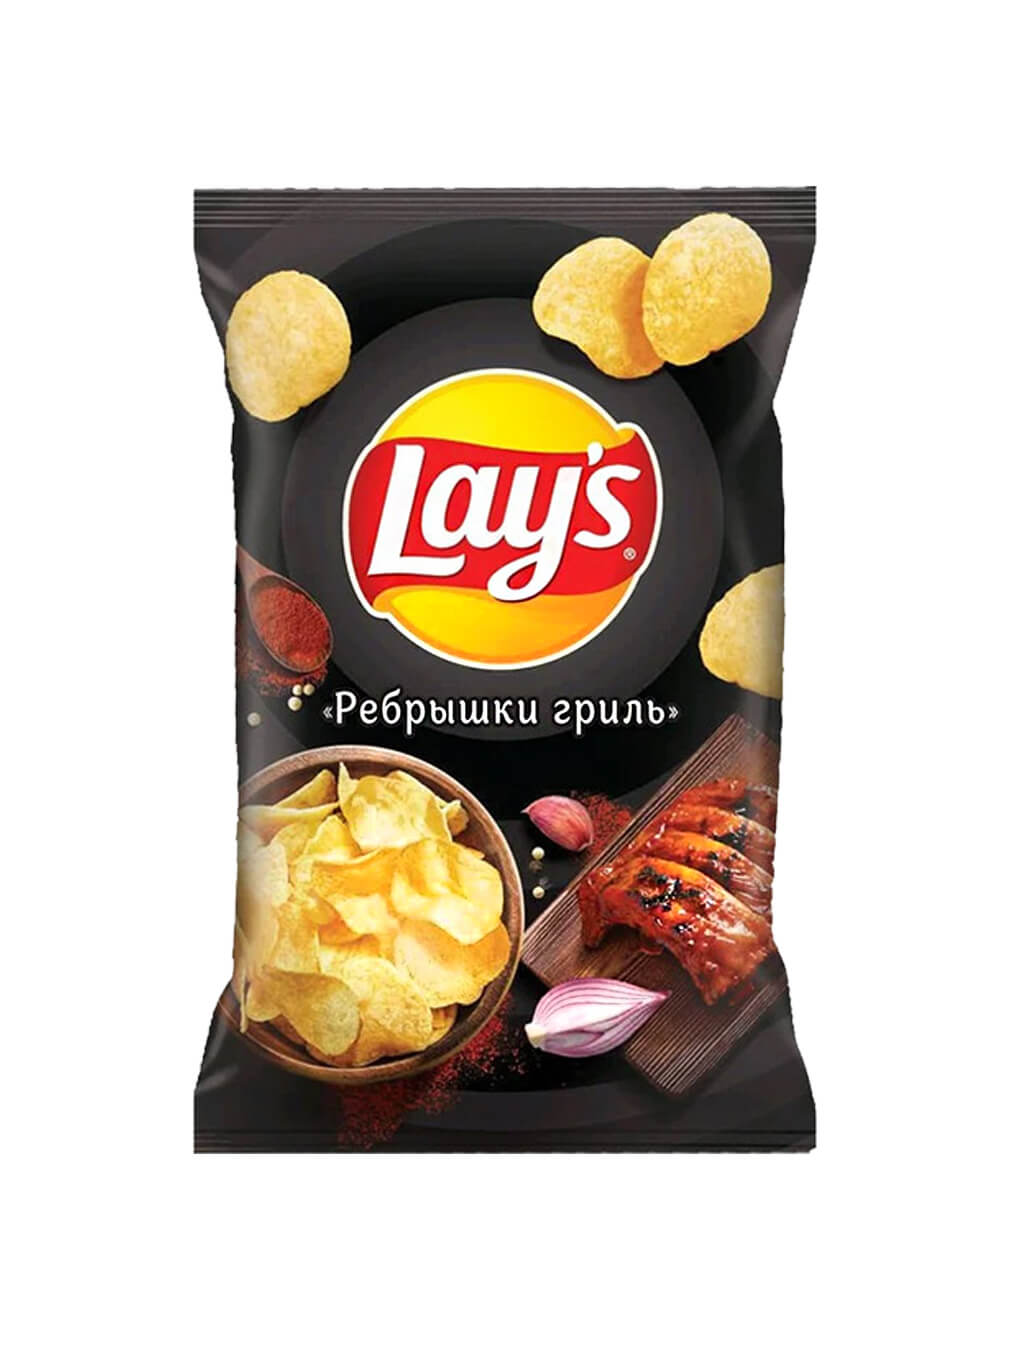 картинка Лэйс Lay's чипсы картофельные Ребрышки гриль 150 гр